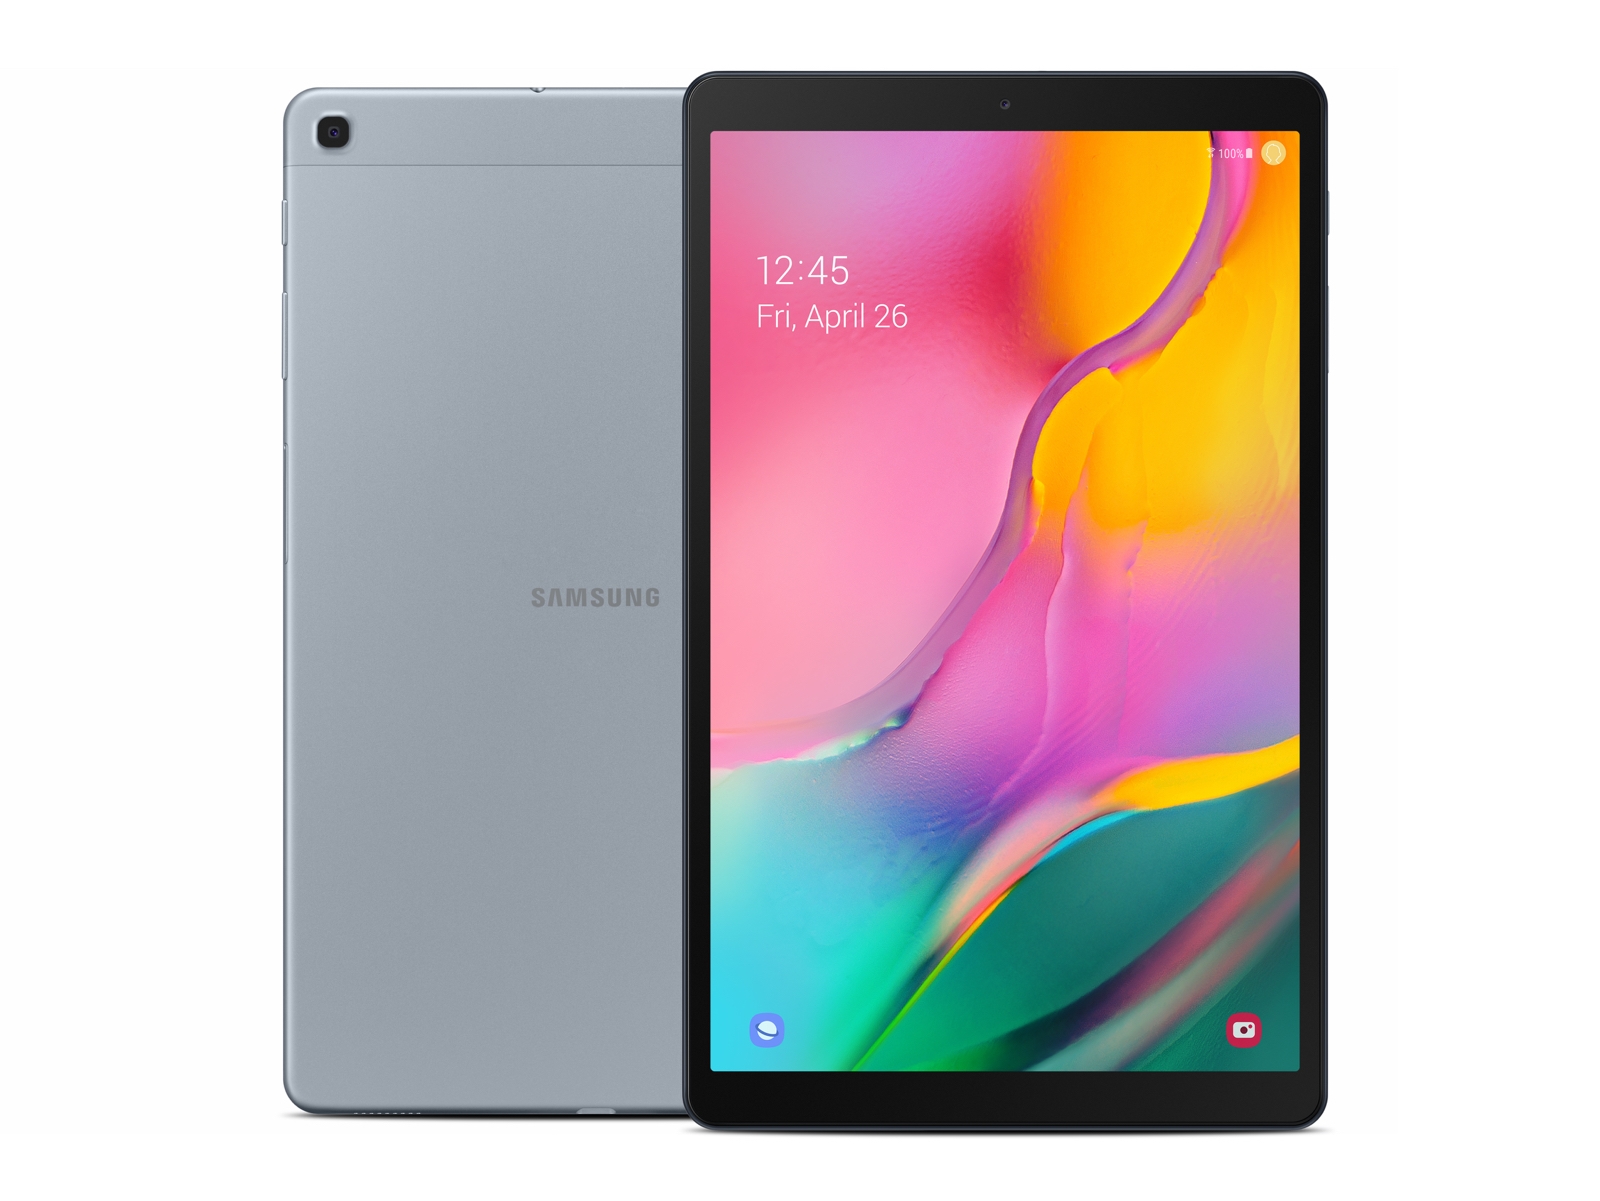 Galaxy Tab A 10.1 2019 32GB Silver Wi Fi Tablets - SM-T510NZSAXAR 